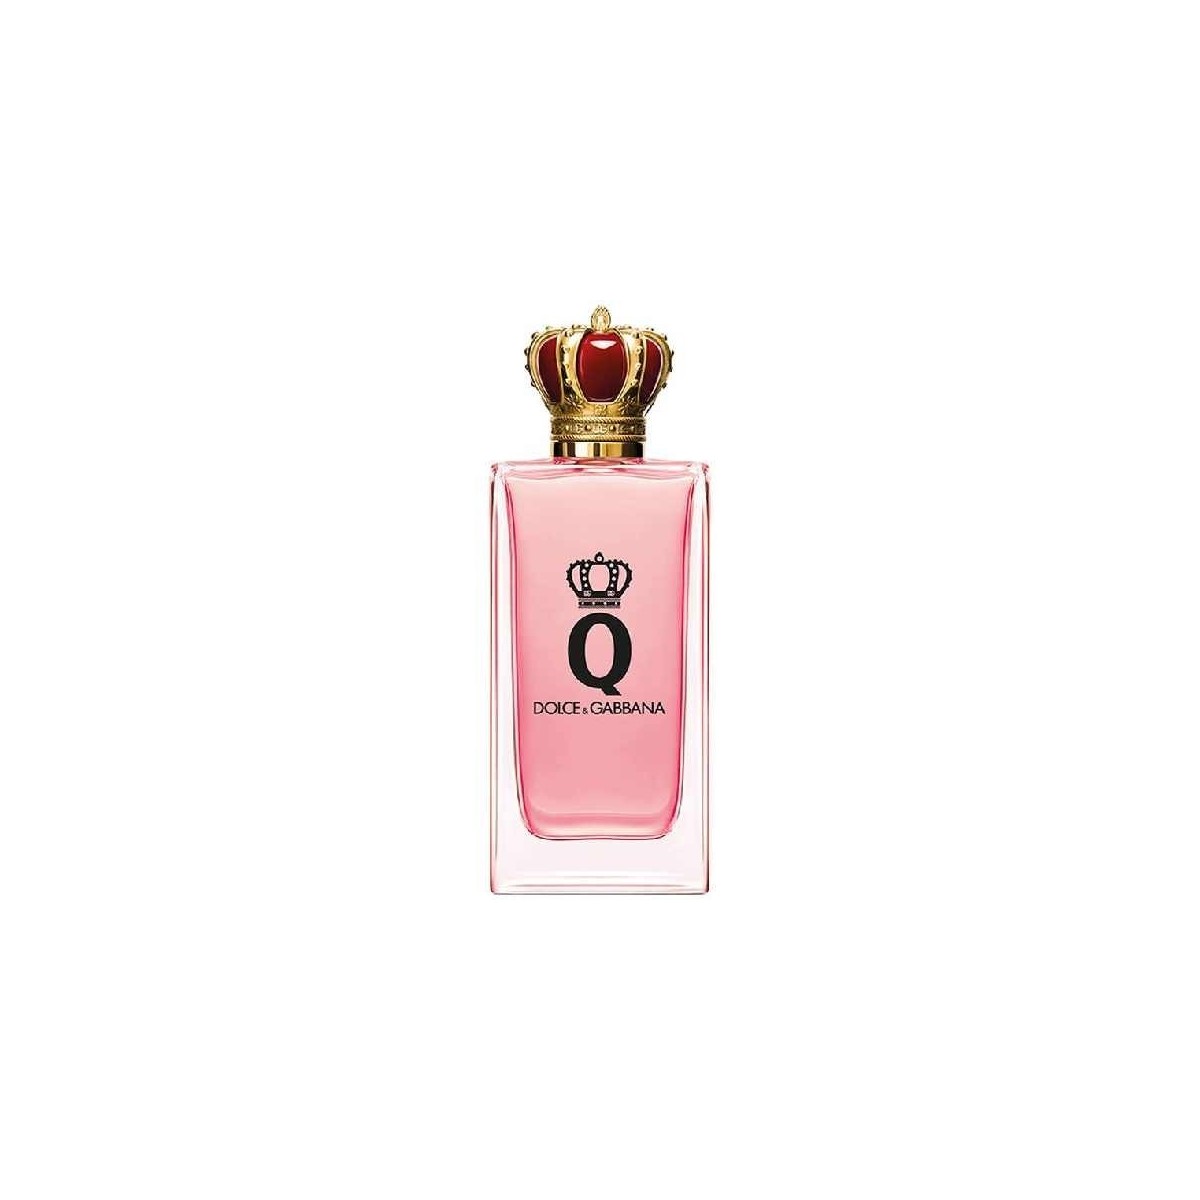 Dolce e Gabbana Q Eau de Parfum